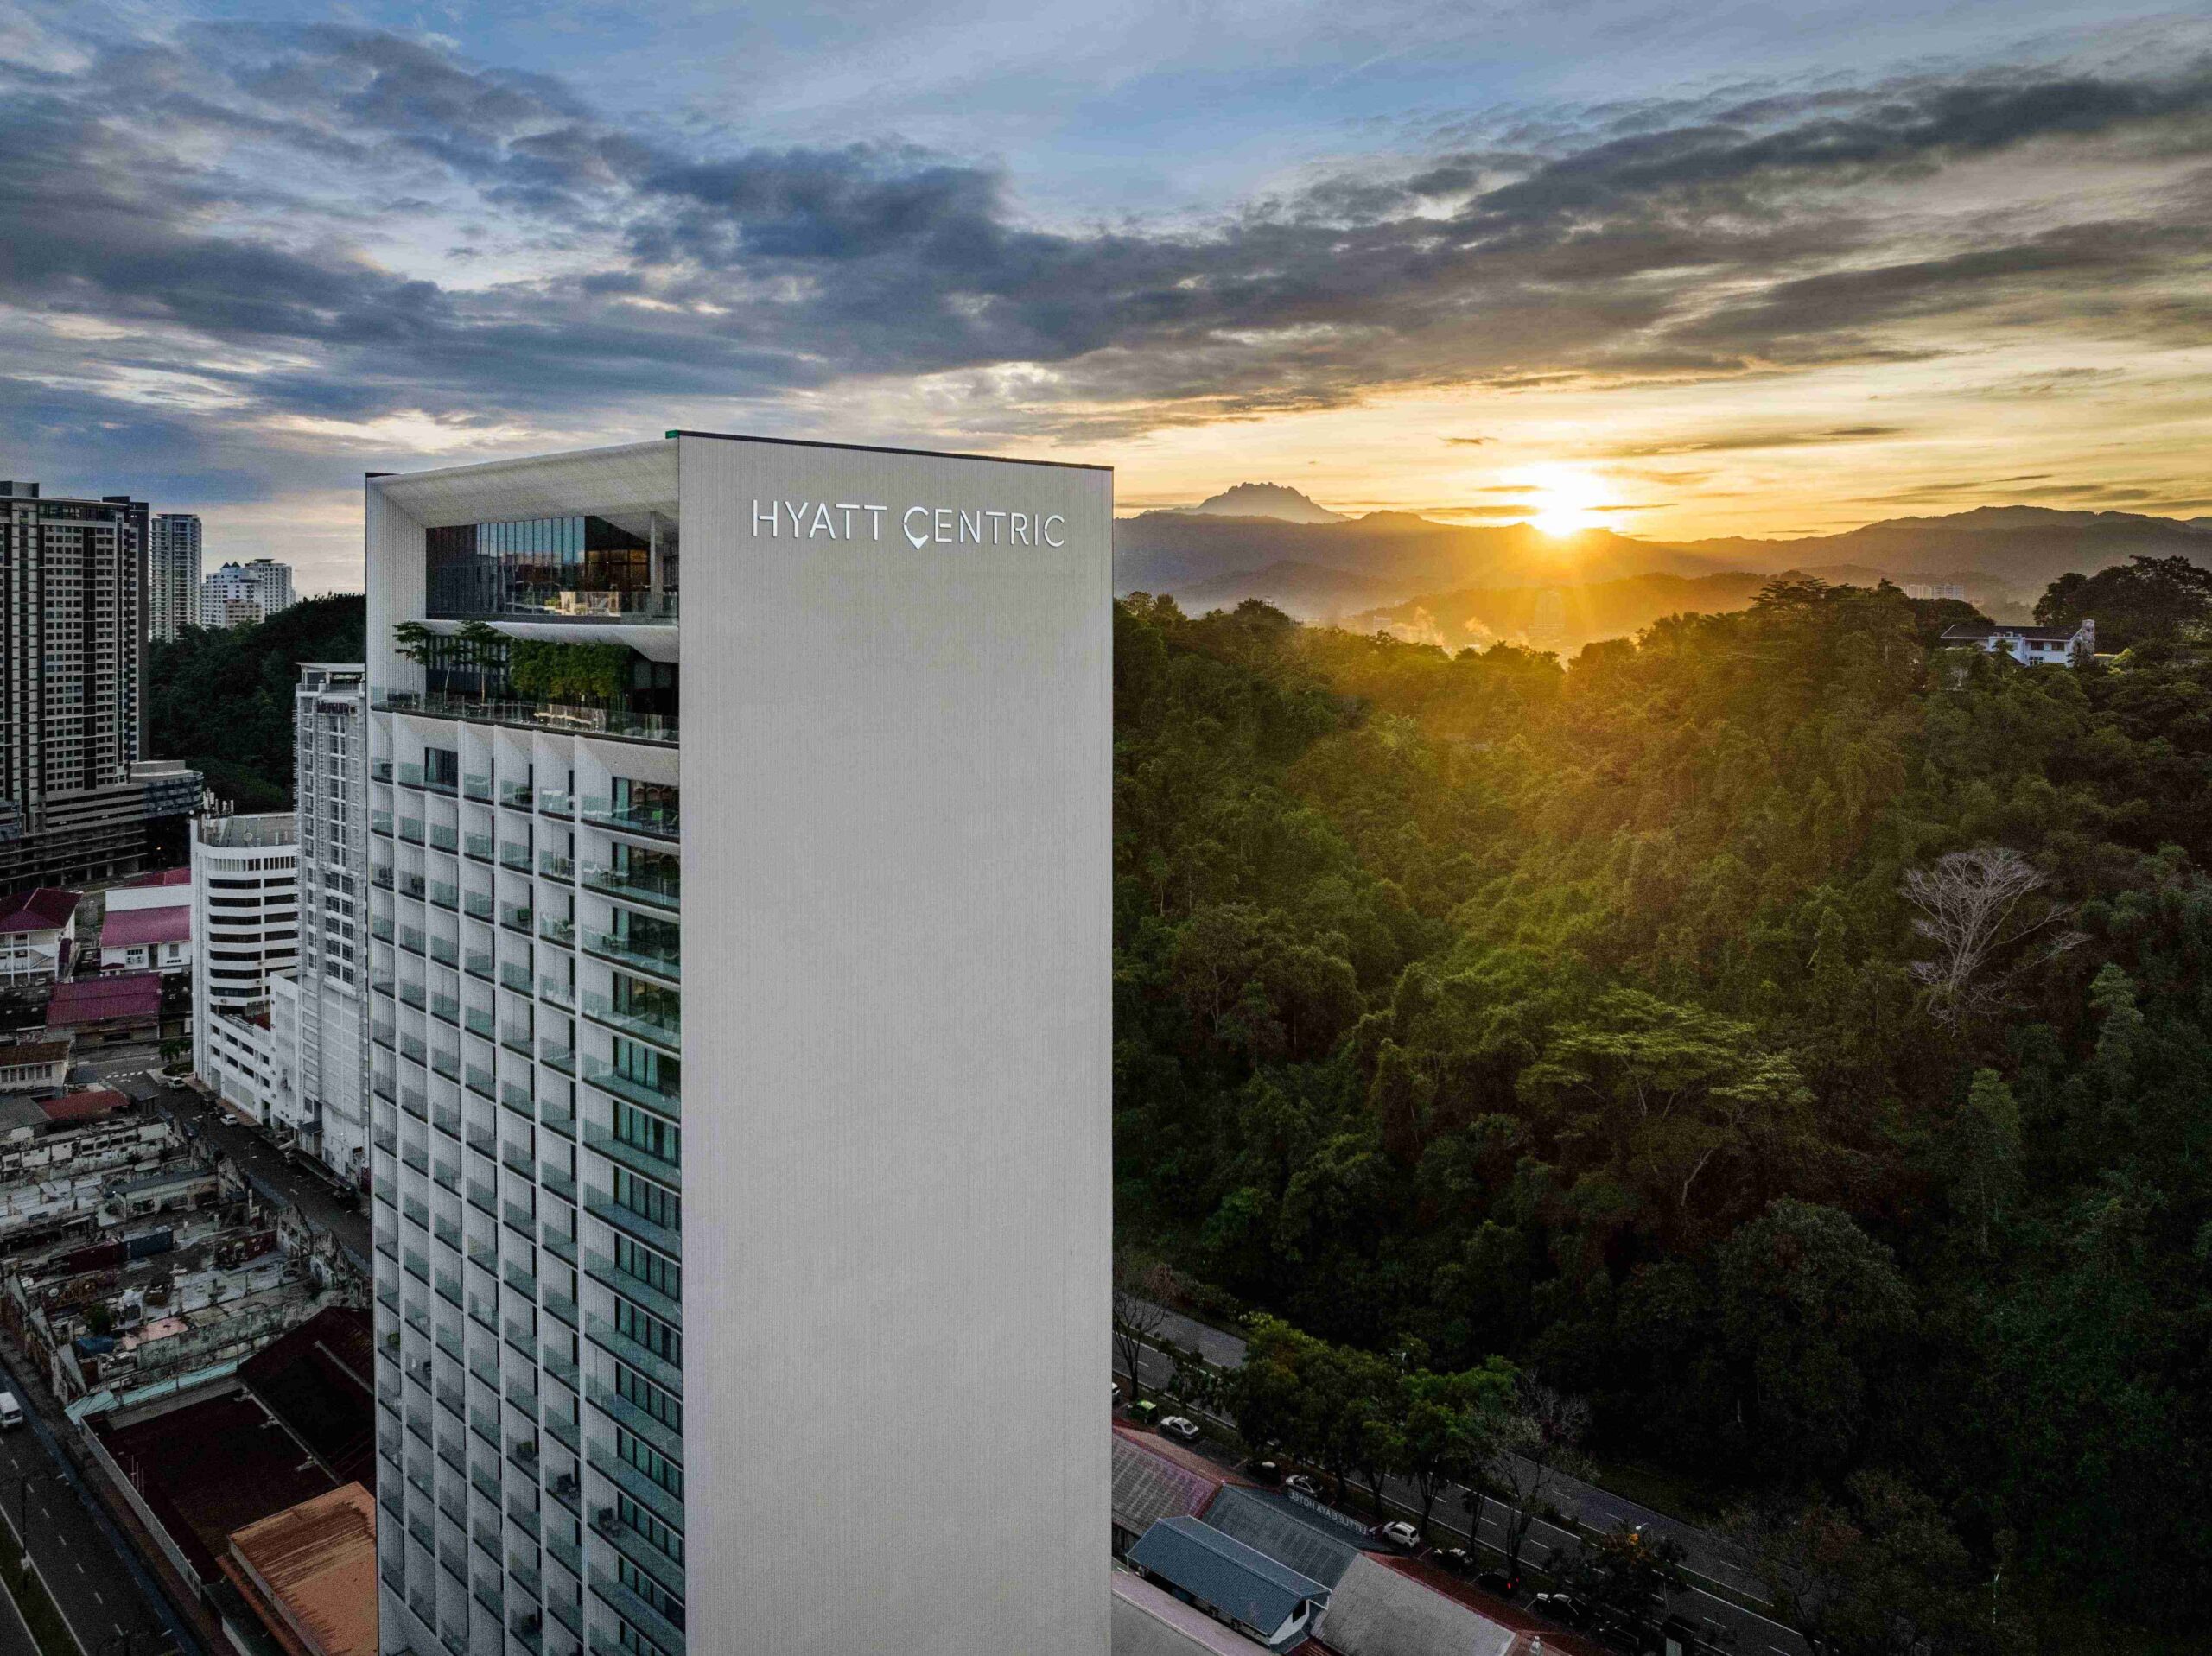 Hyatt Centric Kota Kinabalu